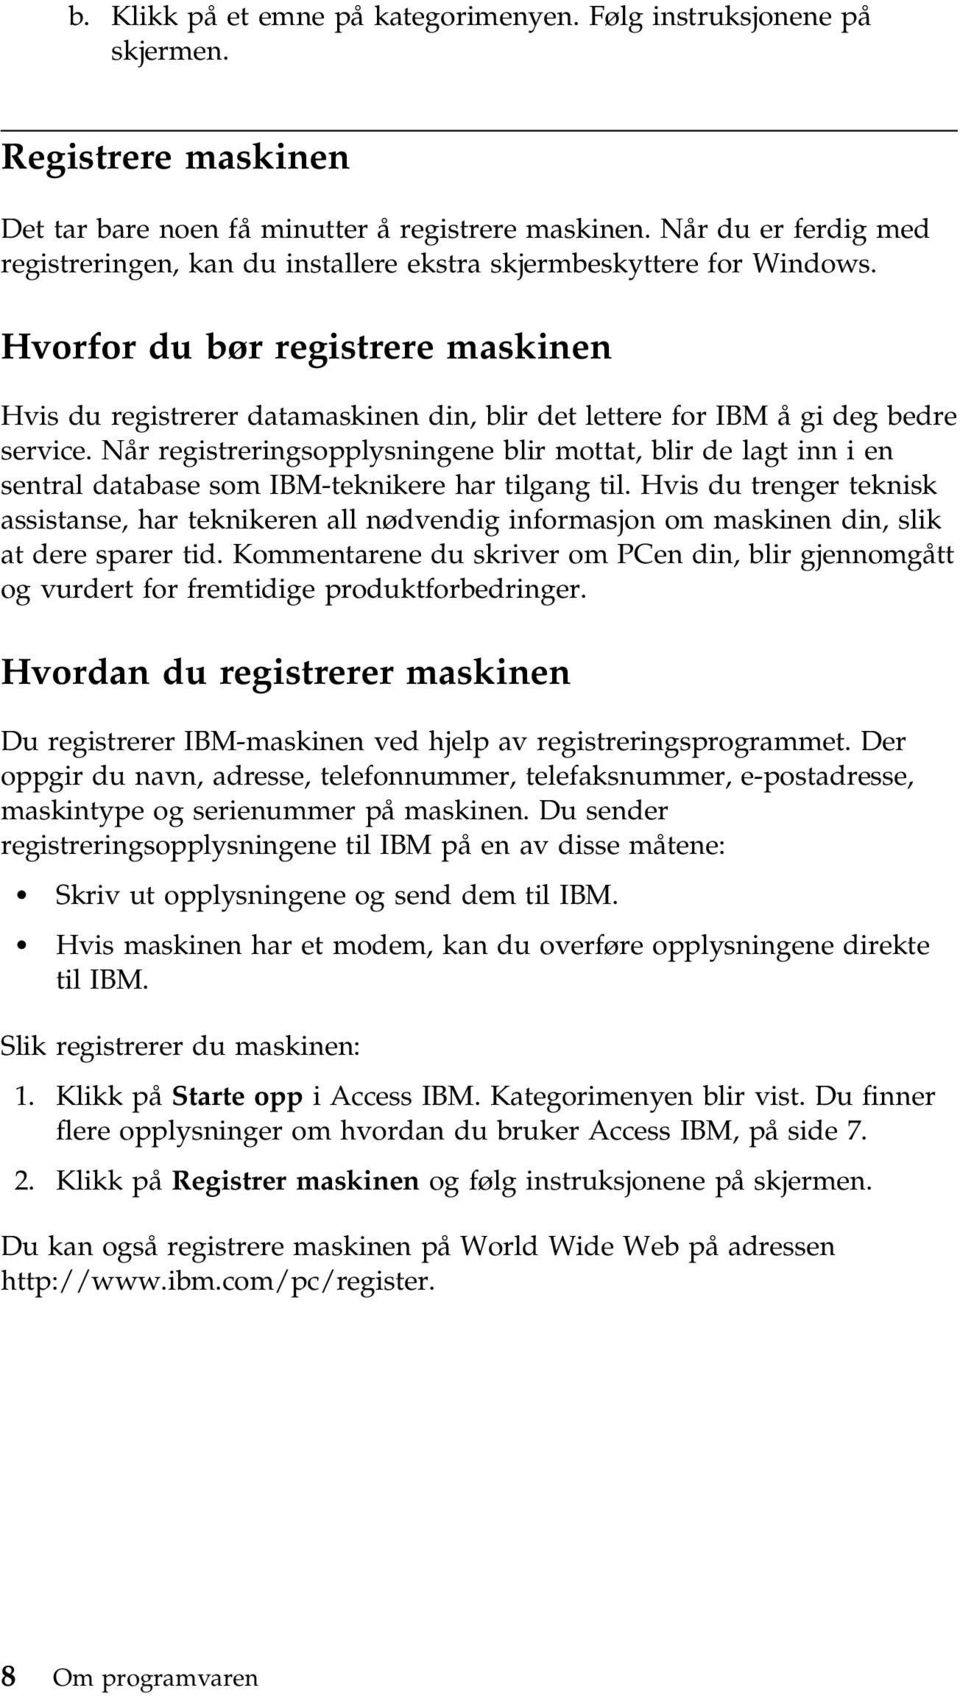 Hvorfor du bør registrere maskinen Hvis du registrerer datamaskinen din, blir det lettere for IBM å gi deg bedre service.